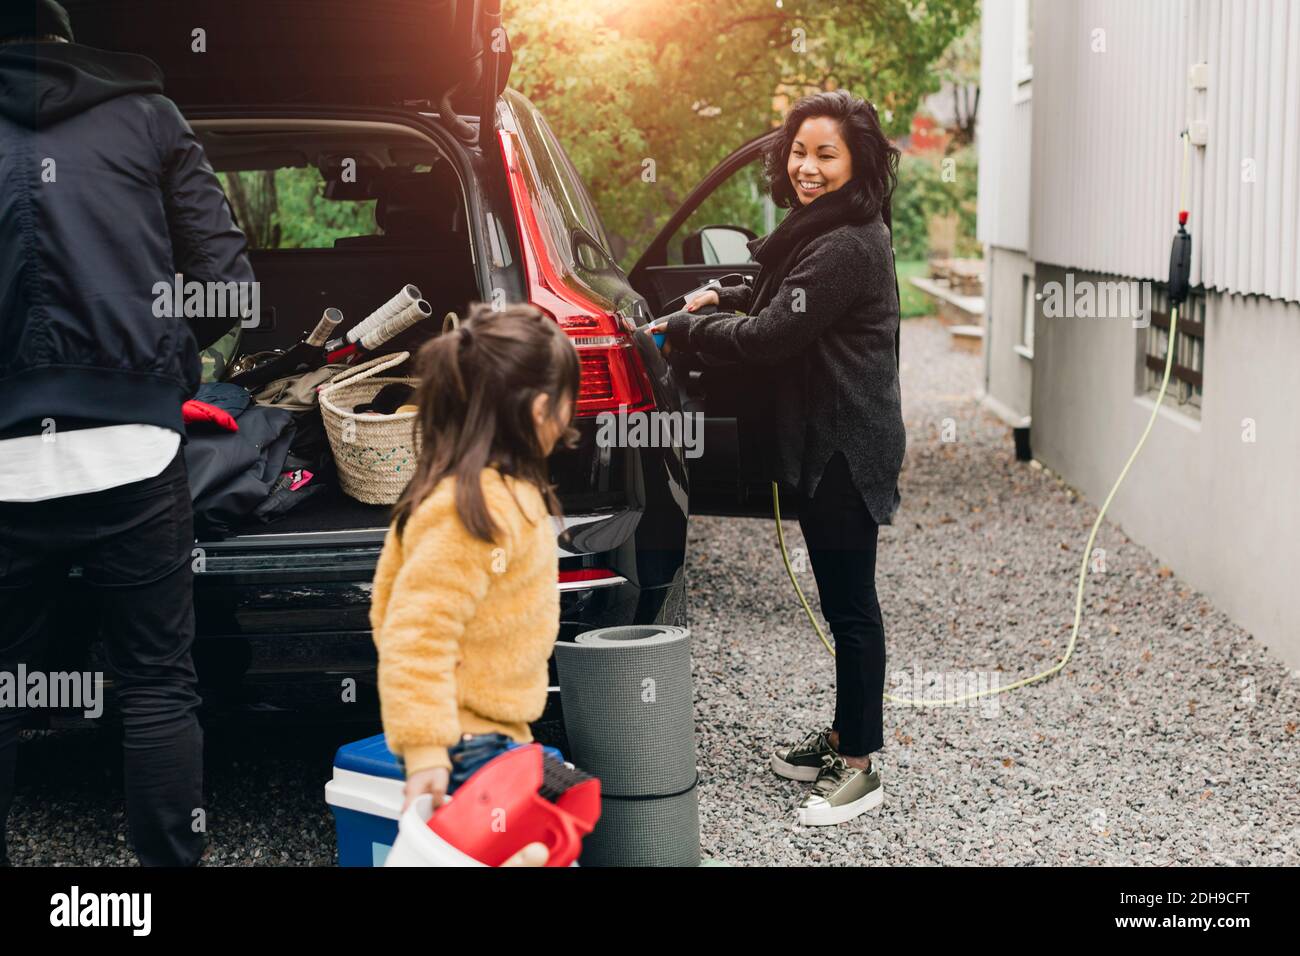 Lächelnde Frau lädt das Auto, während die Familie Gepäck im Kofferraum lädt Stockfoto